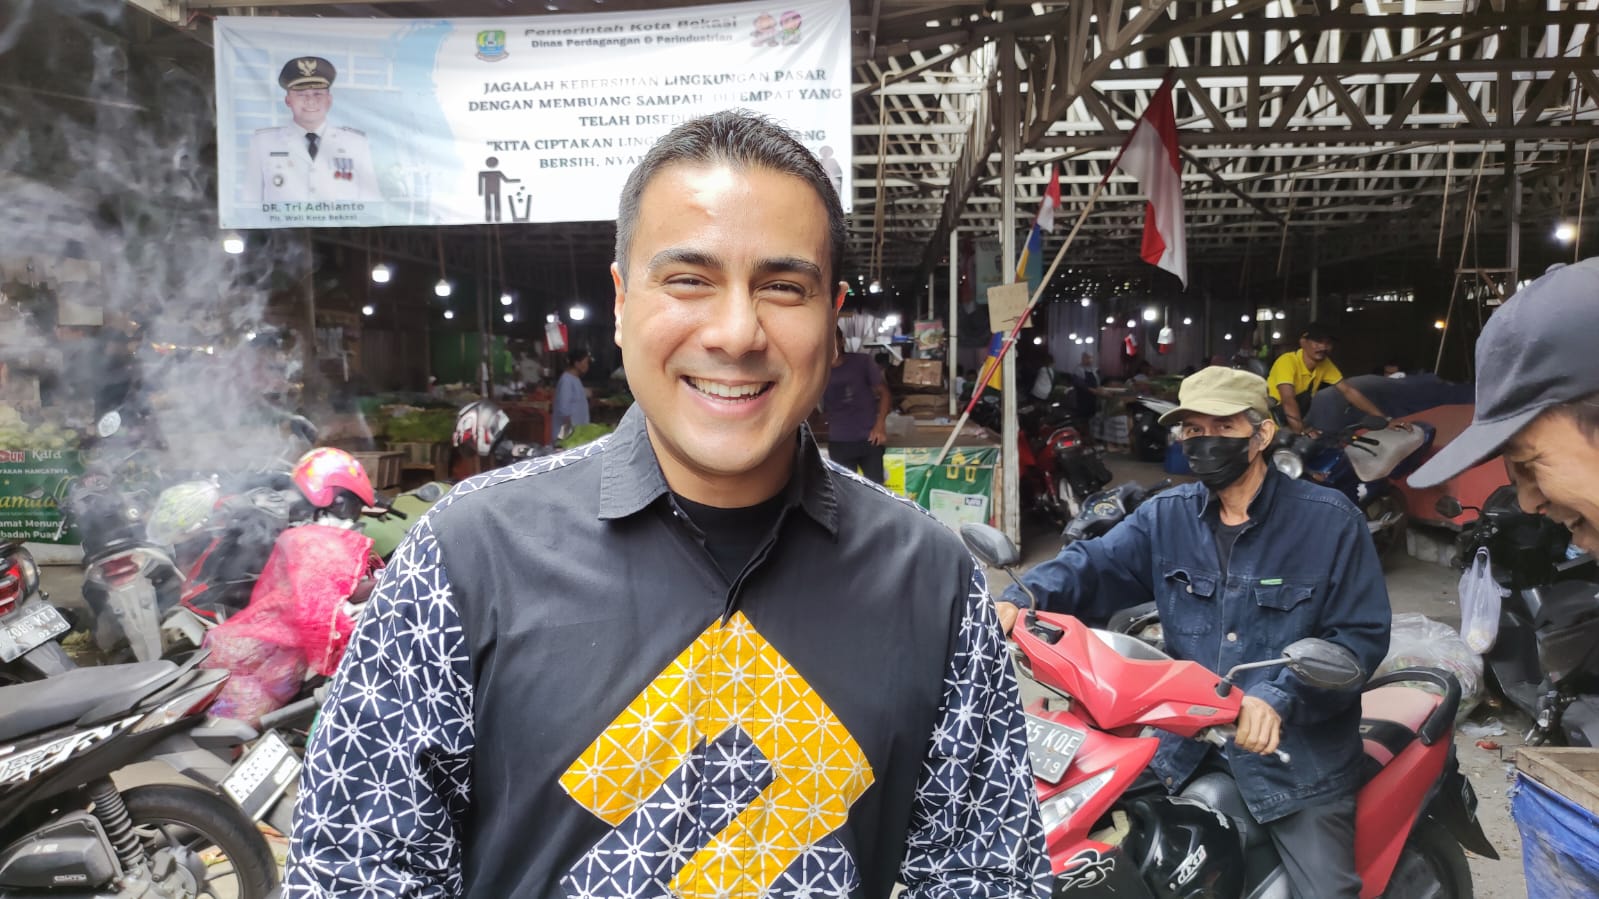 Jadi Jago Golkar di Kota Bekasi-Depok, Nofel Sebut Sebagai Dapil 'Surga'